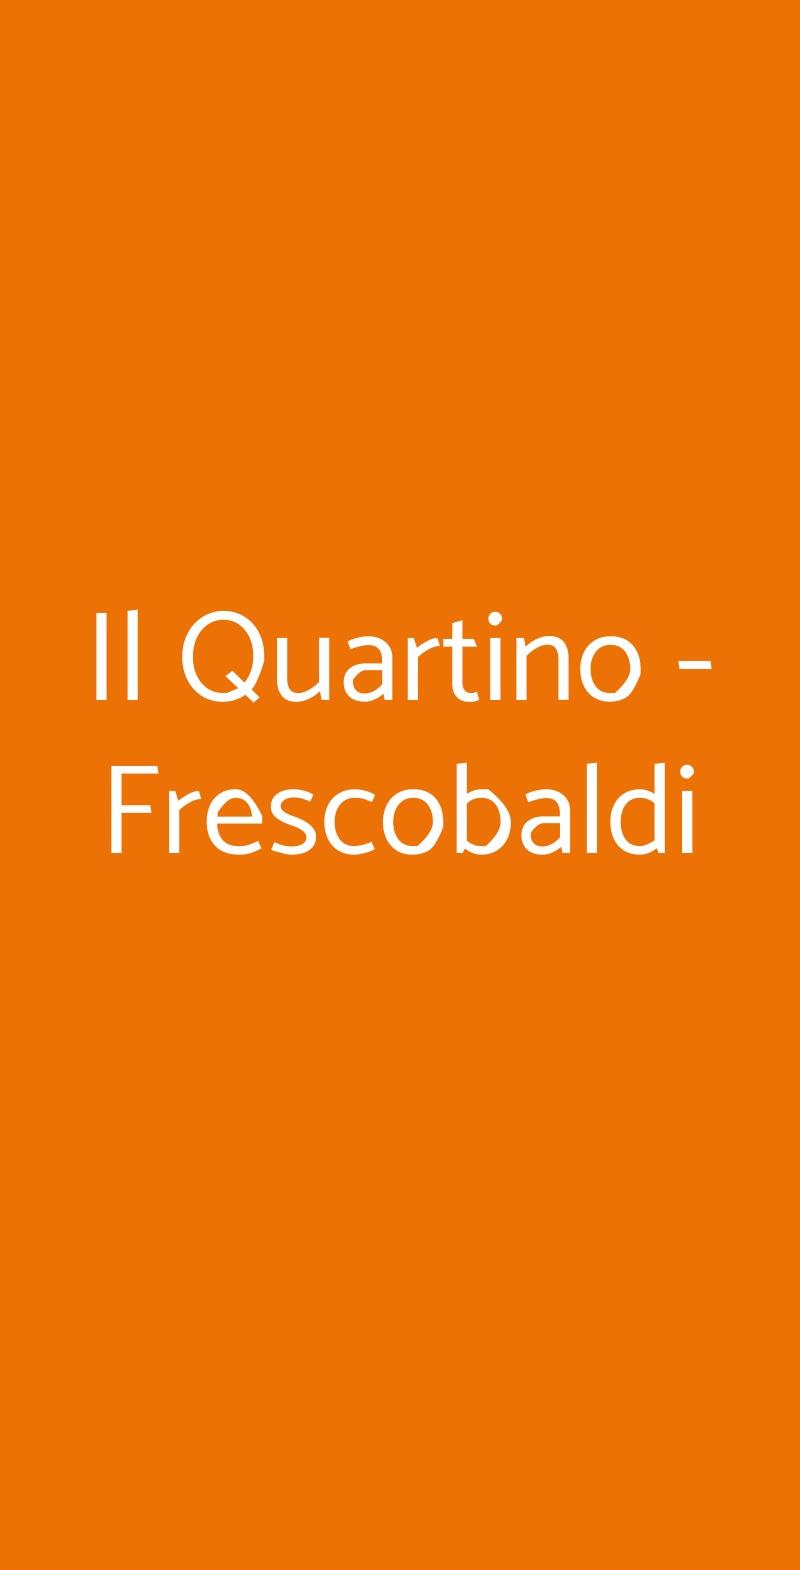 Il Quartino - Frescobaldi Pelago menù 1 pagina